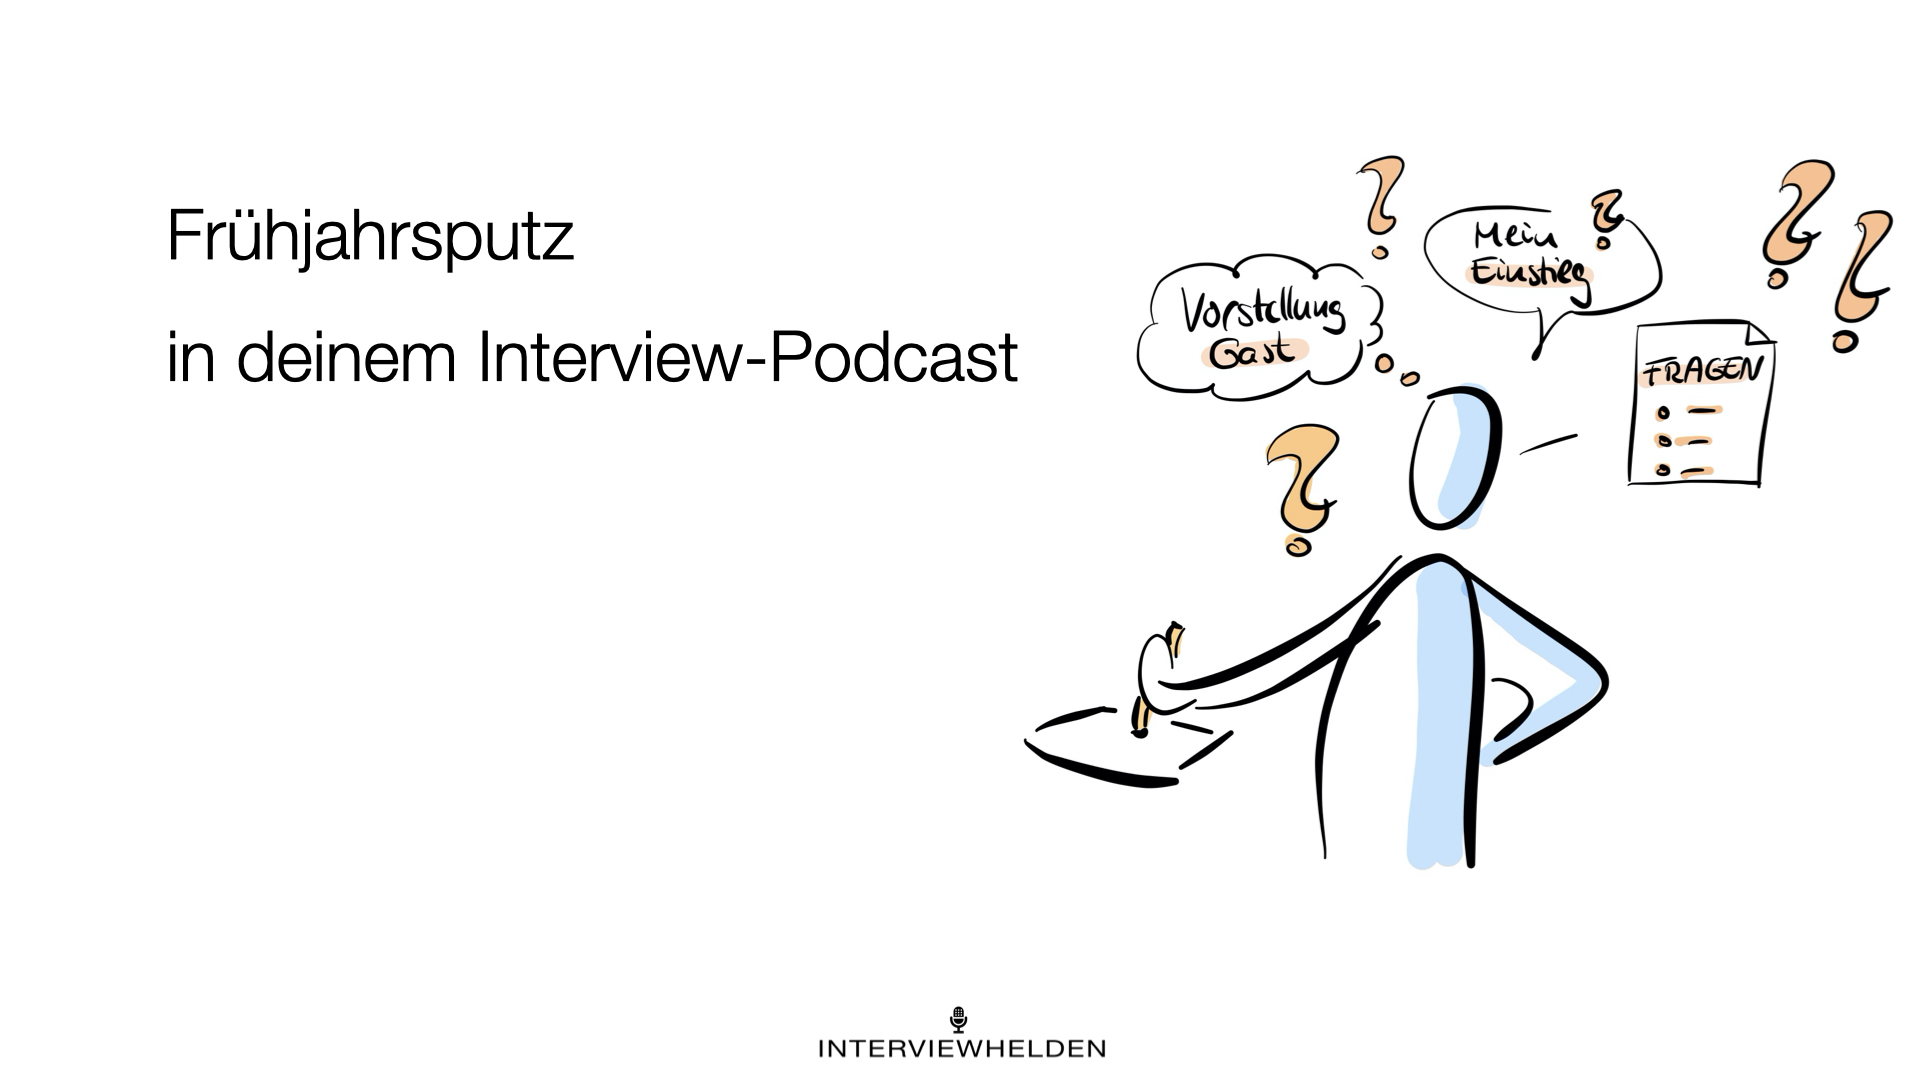 Überprüfe einmal deinen Podcast und finde heraus, was du künftig optimieren möchtest.